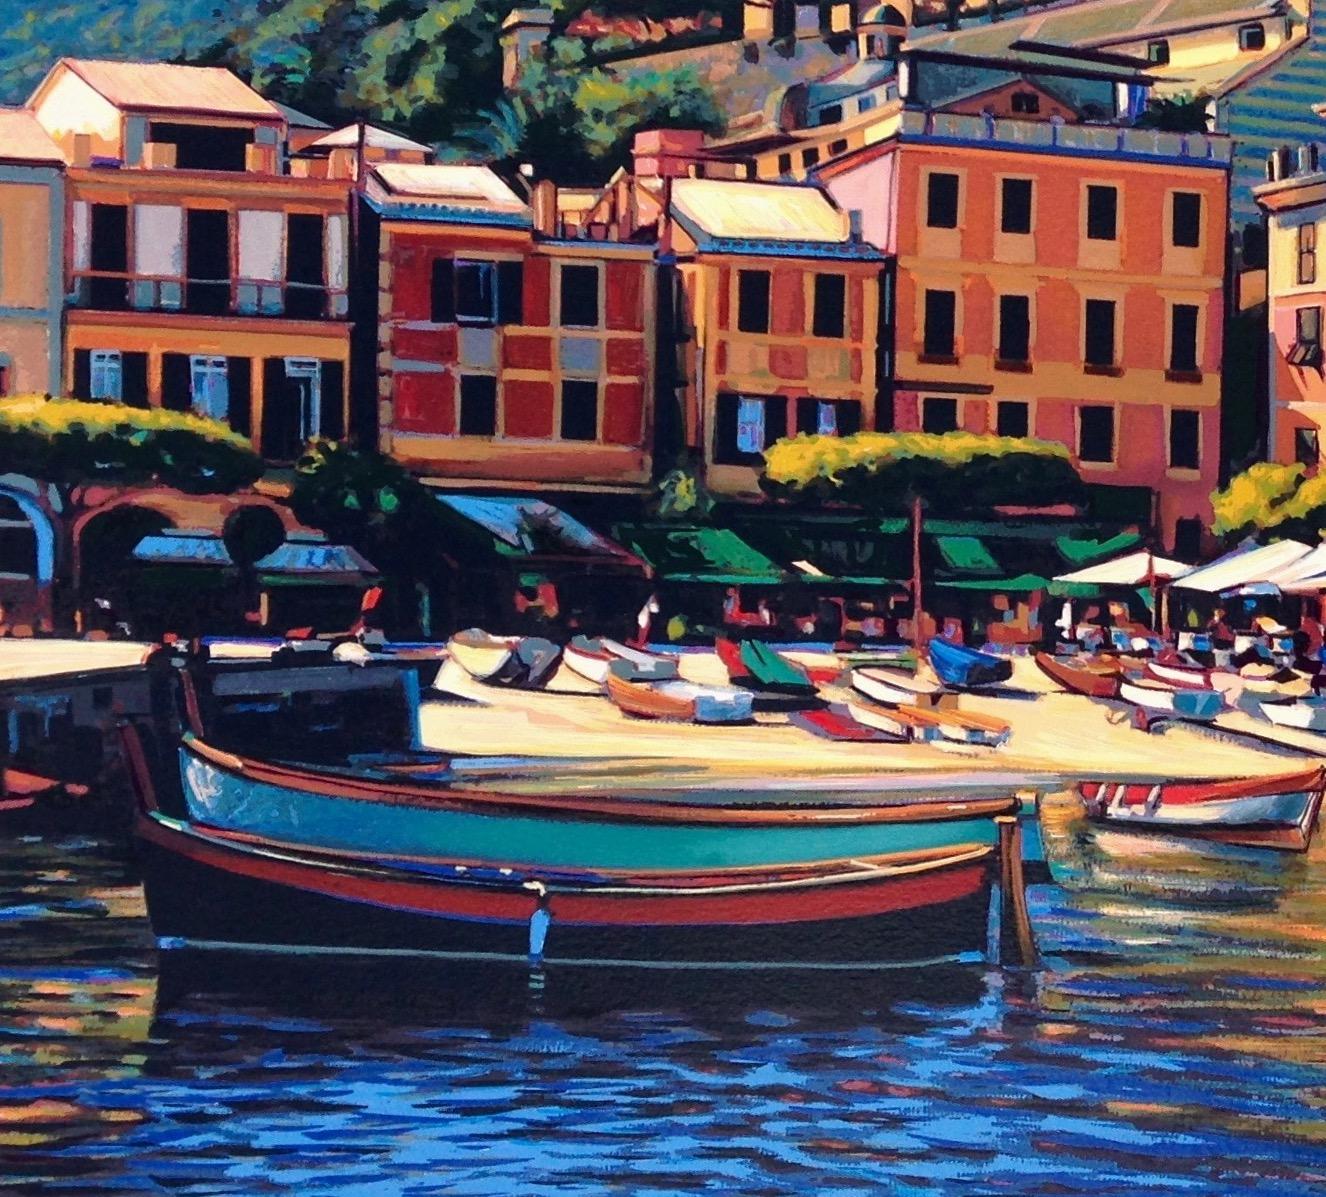  Bunte Hafenszene „Song of Portofino“ aus der Serie „Song of Portofino“ der italienischen Riviera – Print von Tom Swimm